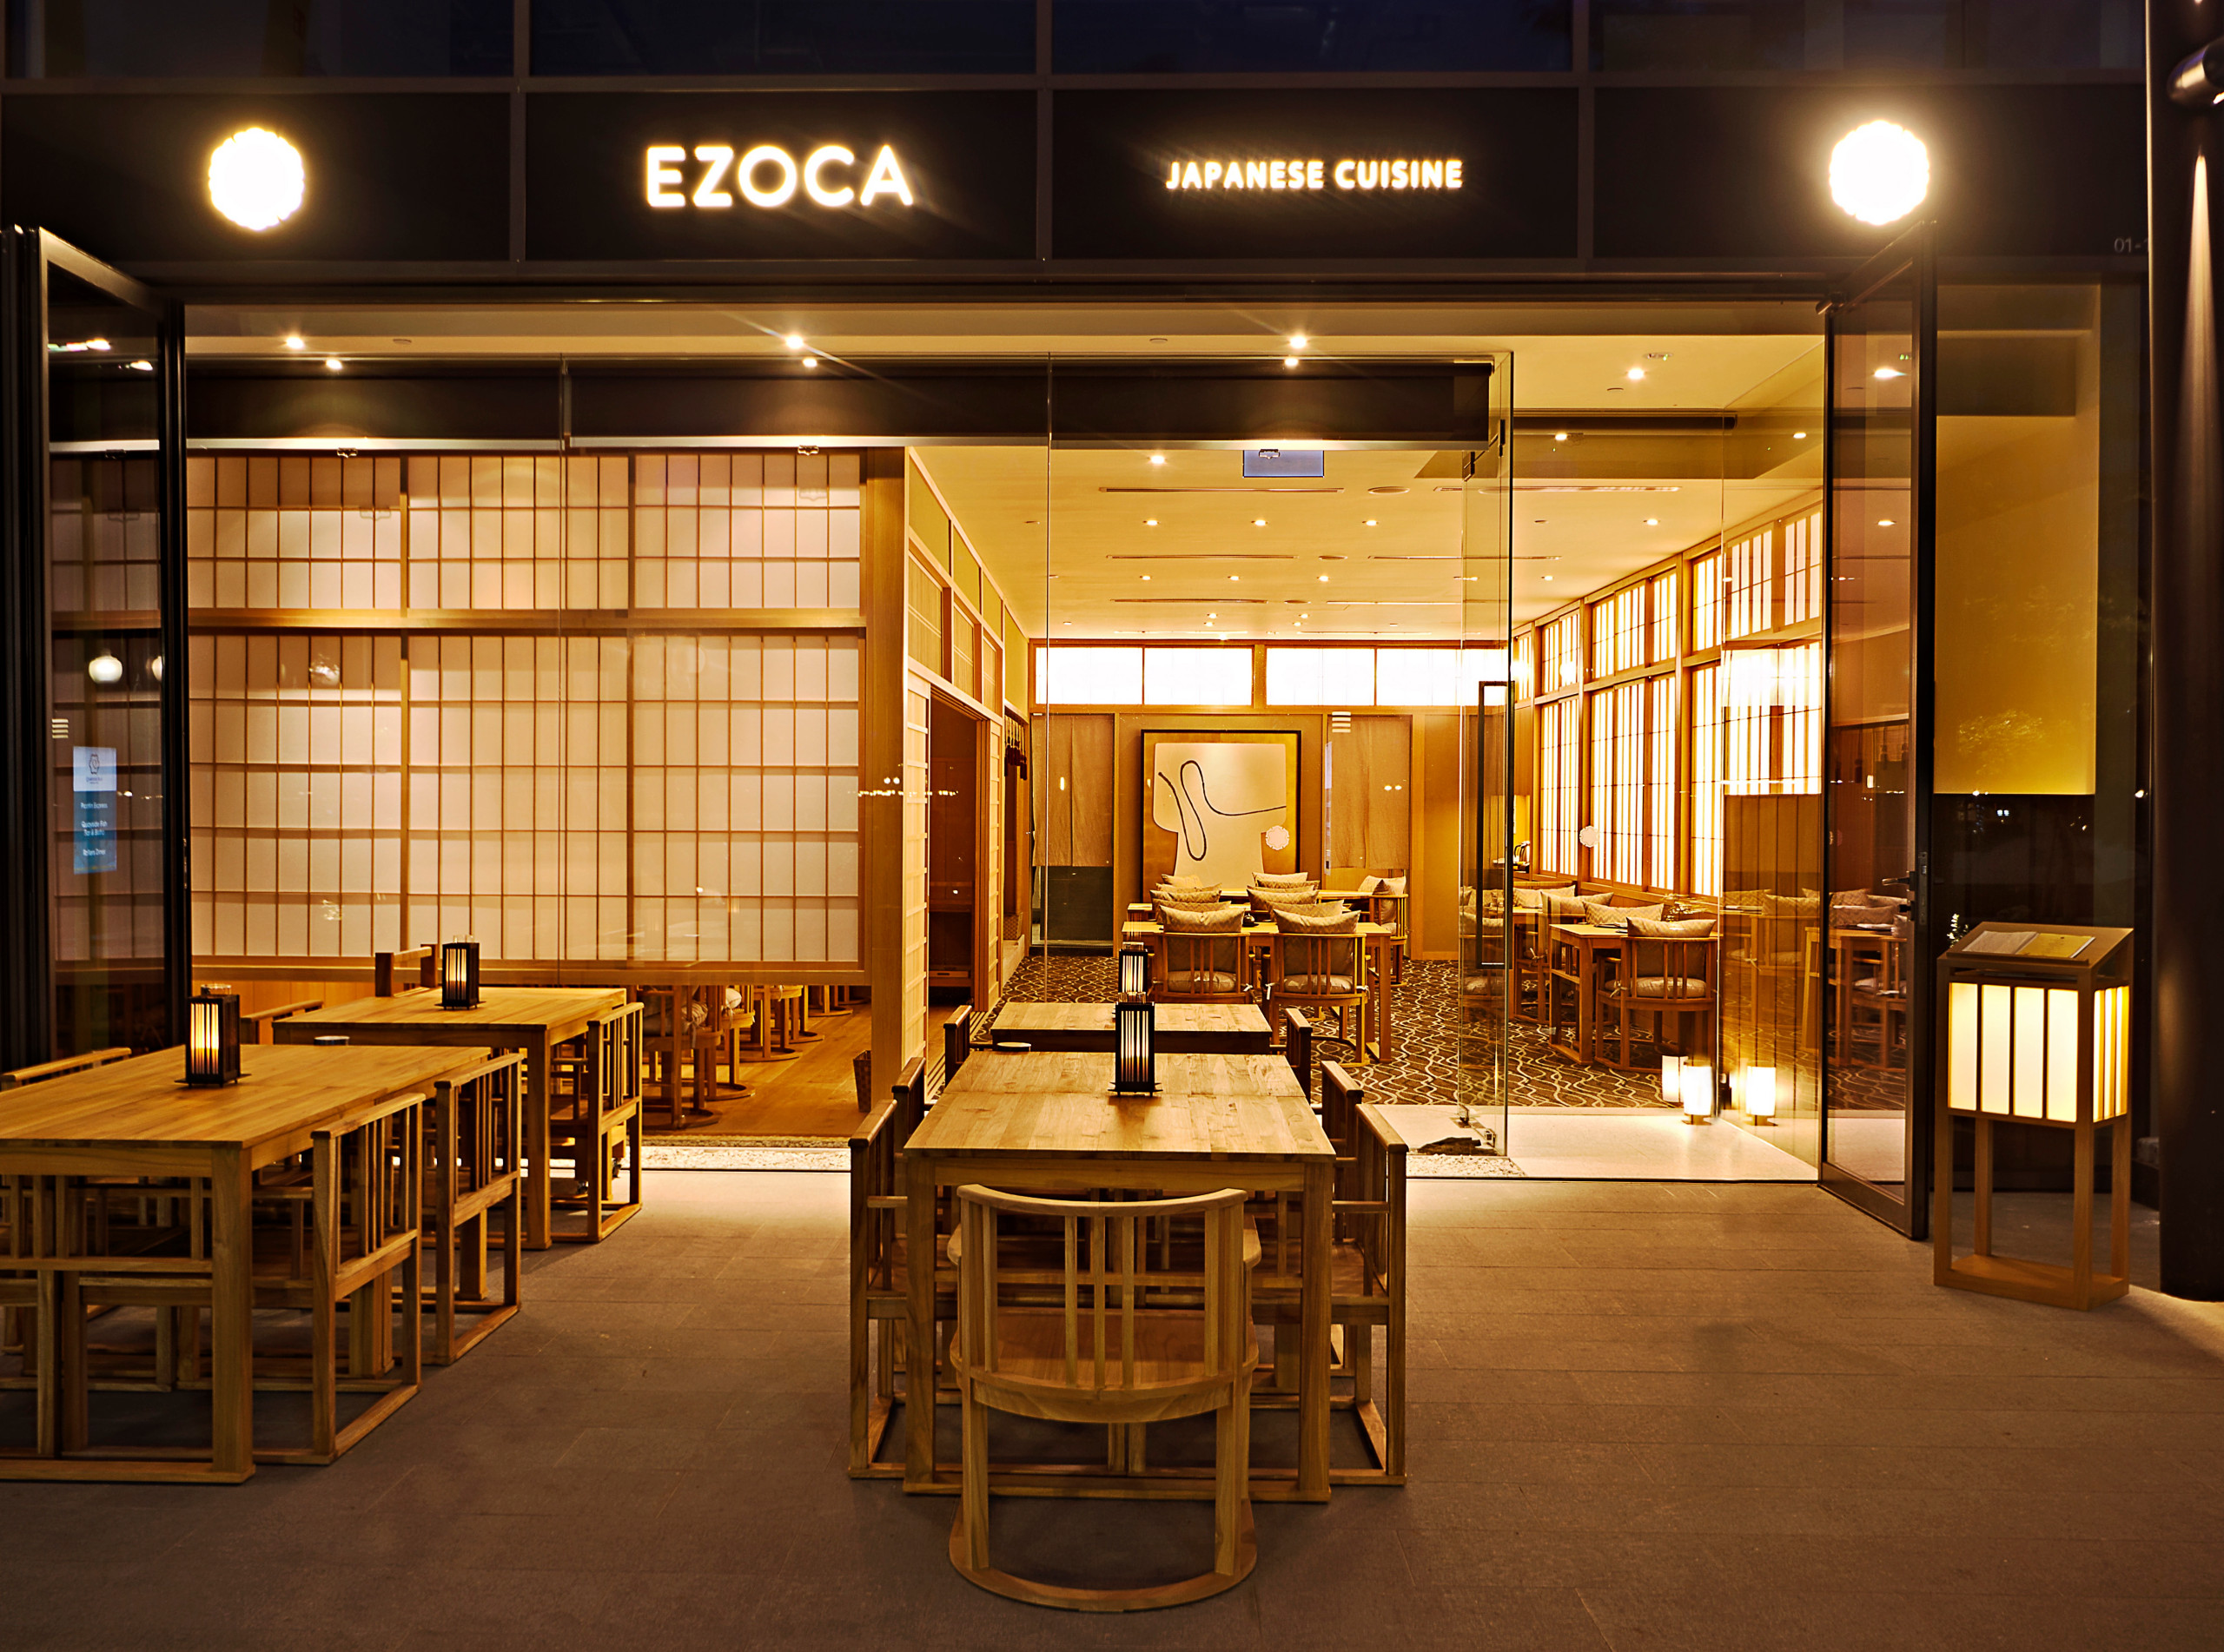 Japanese cuisine EZOCA